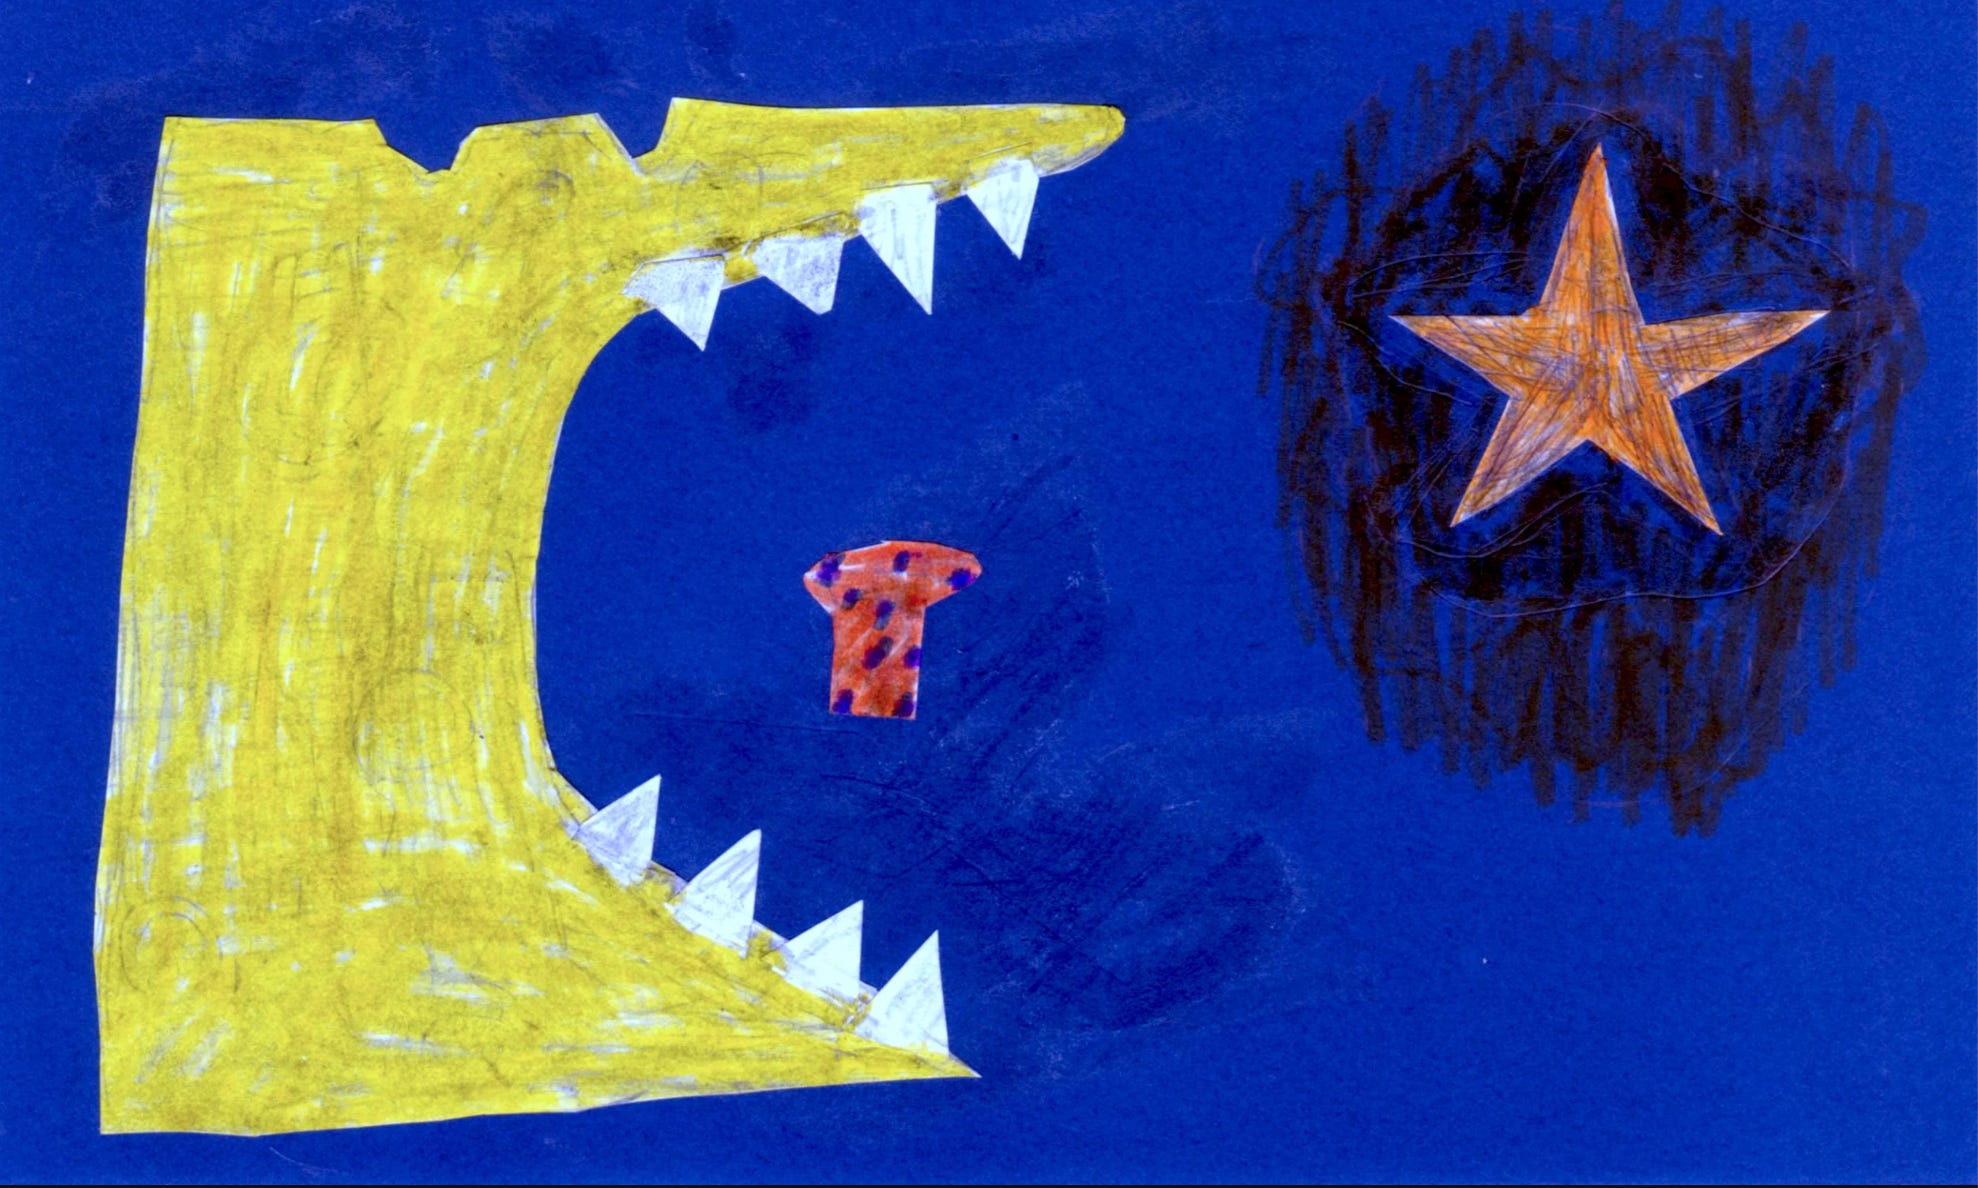 Ein gelbes Geschöpf mit Zähnen öffnet vor dem Essen sein Maul, während im Hintergrund ein Stern leuchtet.